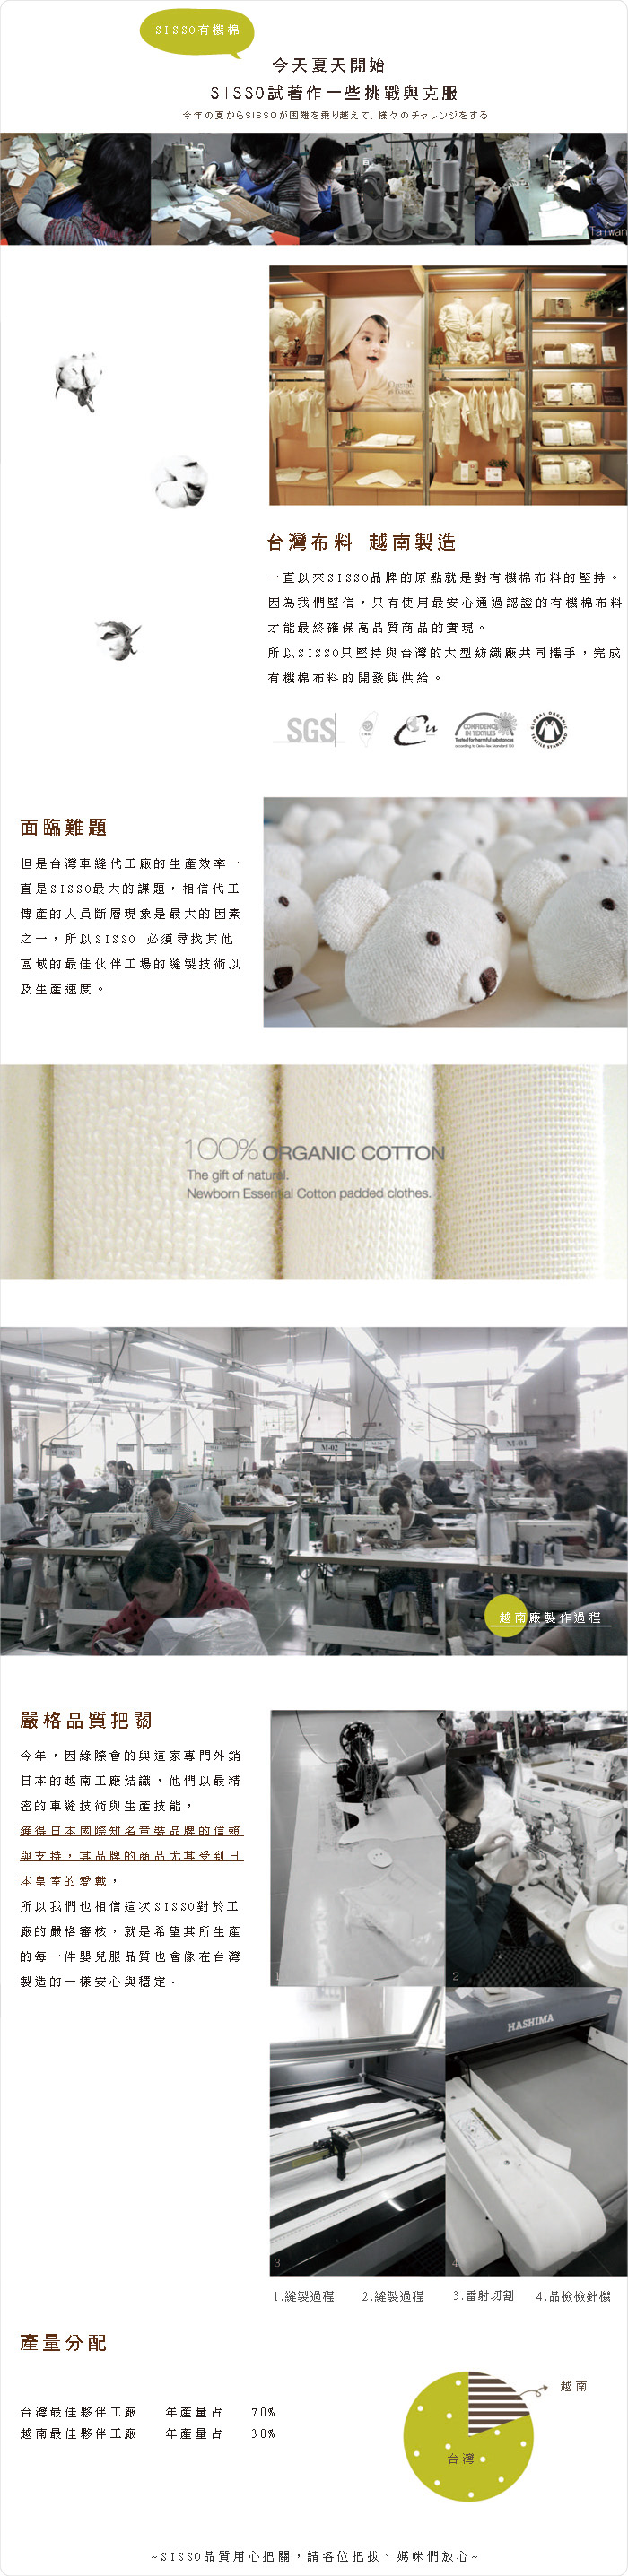 新夥伴,工廠,說明,有機棉,台灣製,越南製,sisso